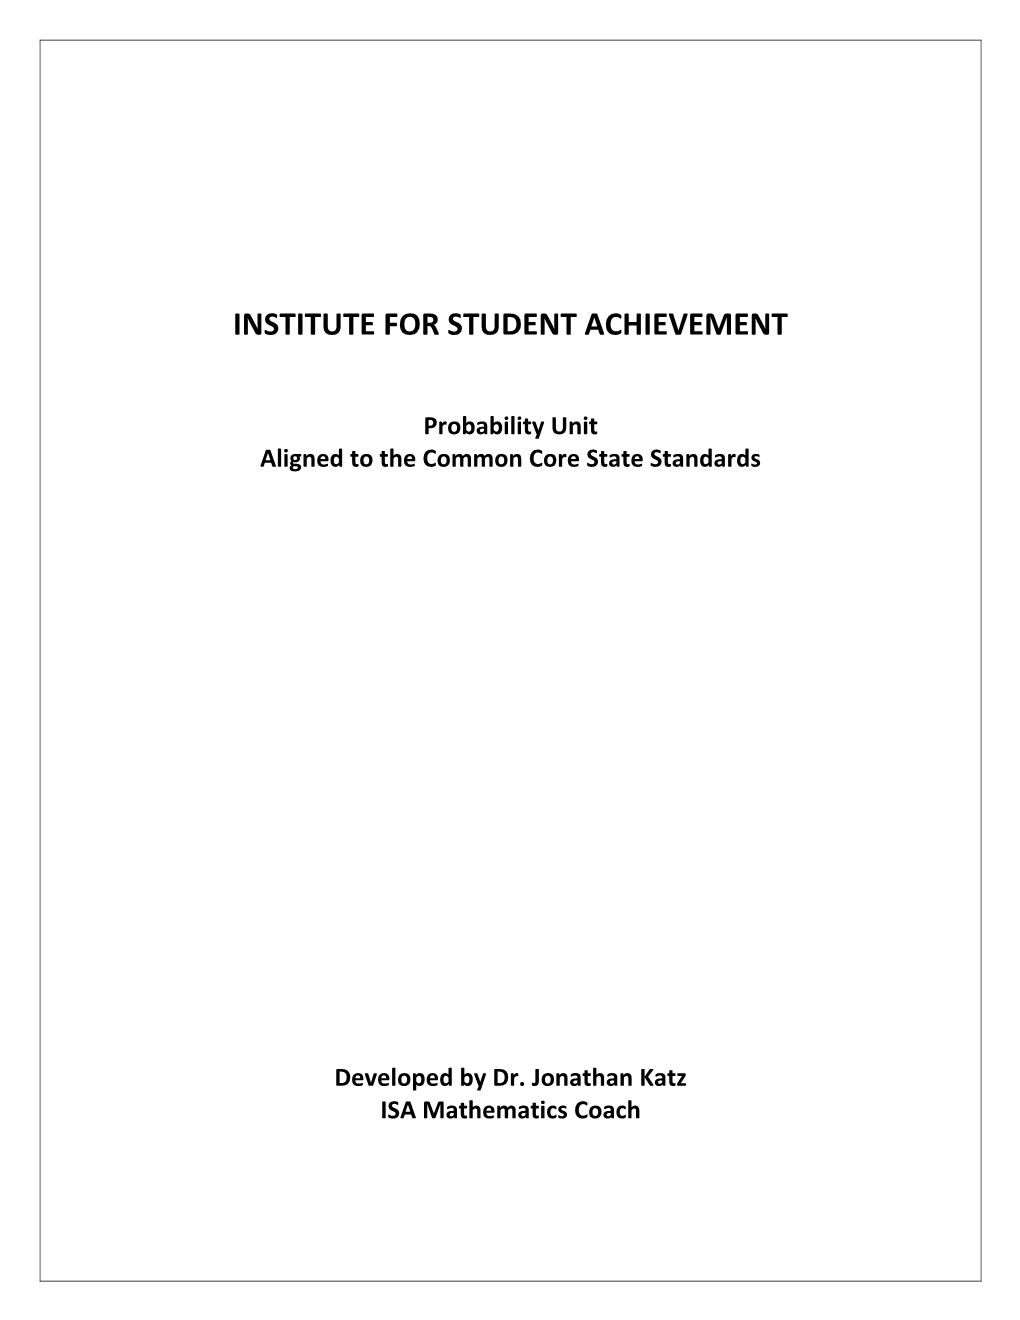 Institute for Student Achievement